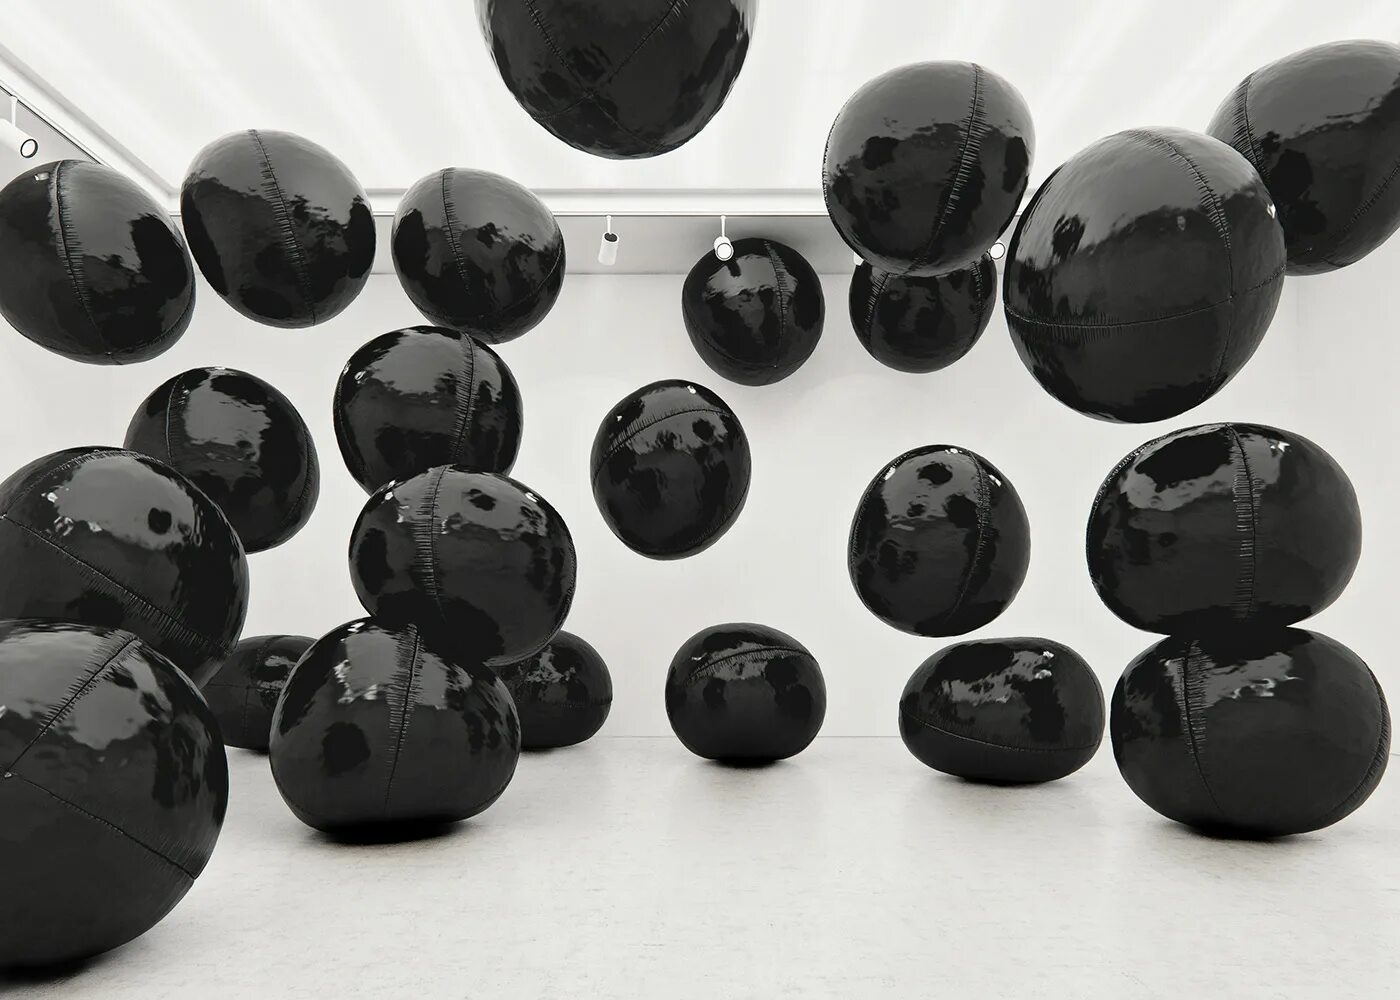 “Черный шар” (the Black Balloon), 2008. Черные воздушные шары. Черный матовый шарик. Черные шары круглые. Черный шар против